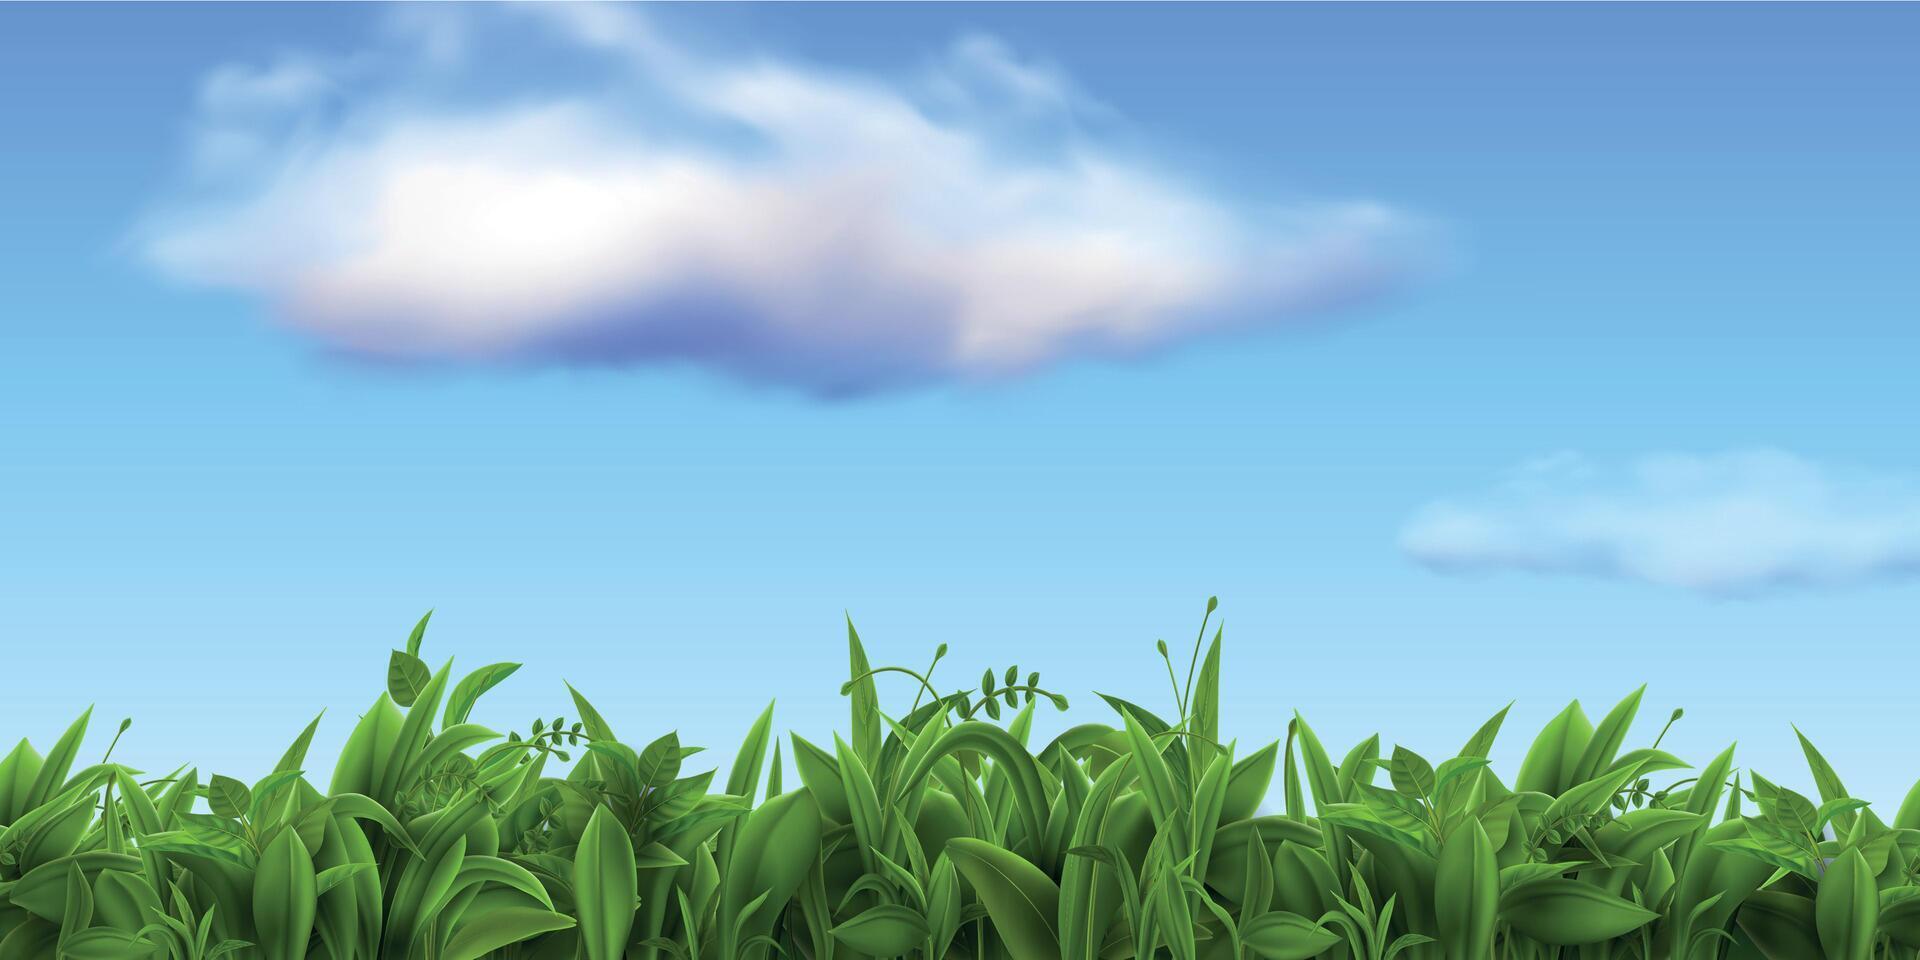 réaliste la nature paysage avec Frais herbe et bleu ciel avec des nuages. printemps vert ferme ou Football champ, Prairie ou pelouse herbe vecteur scène